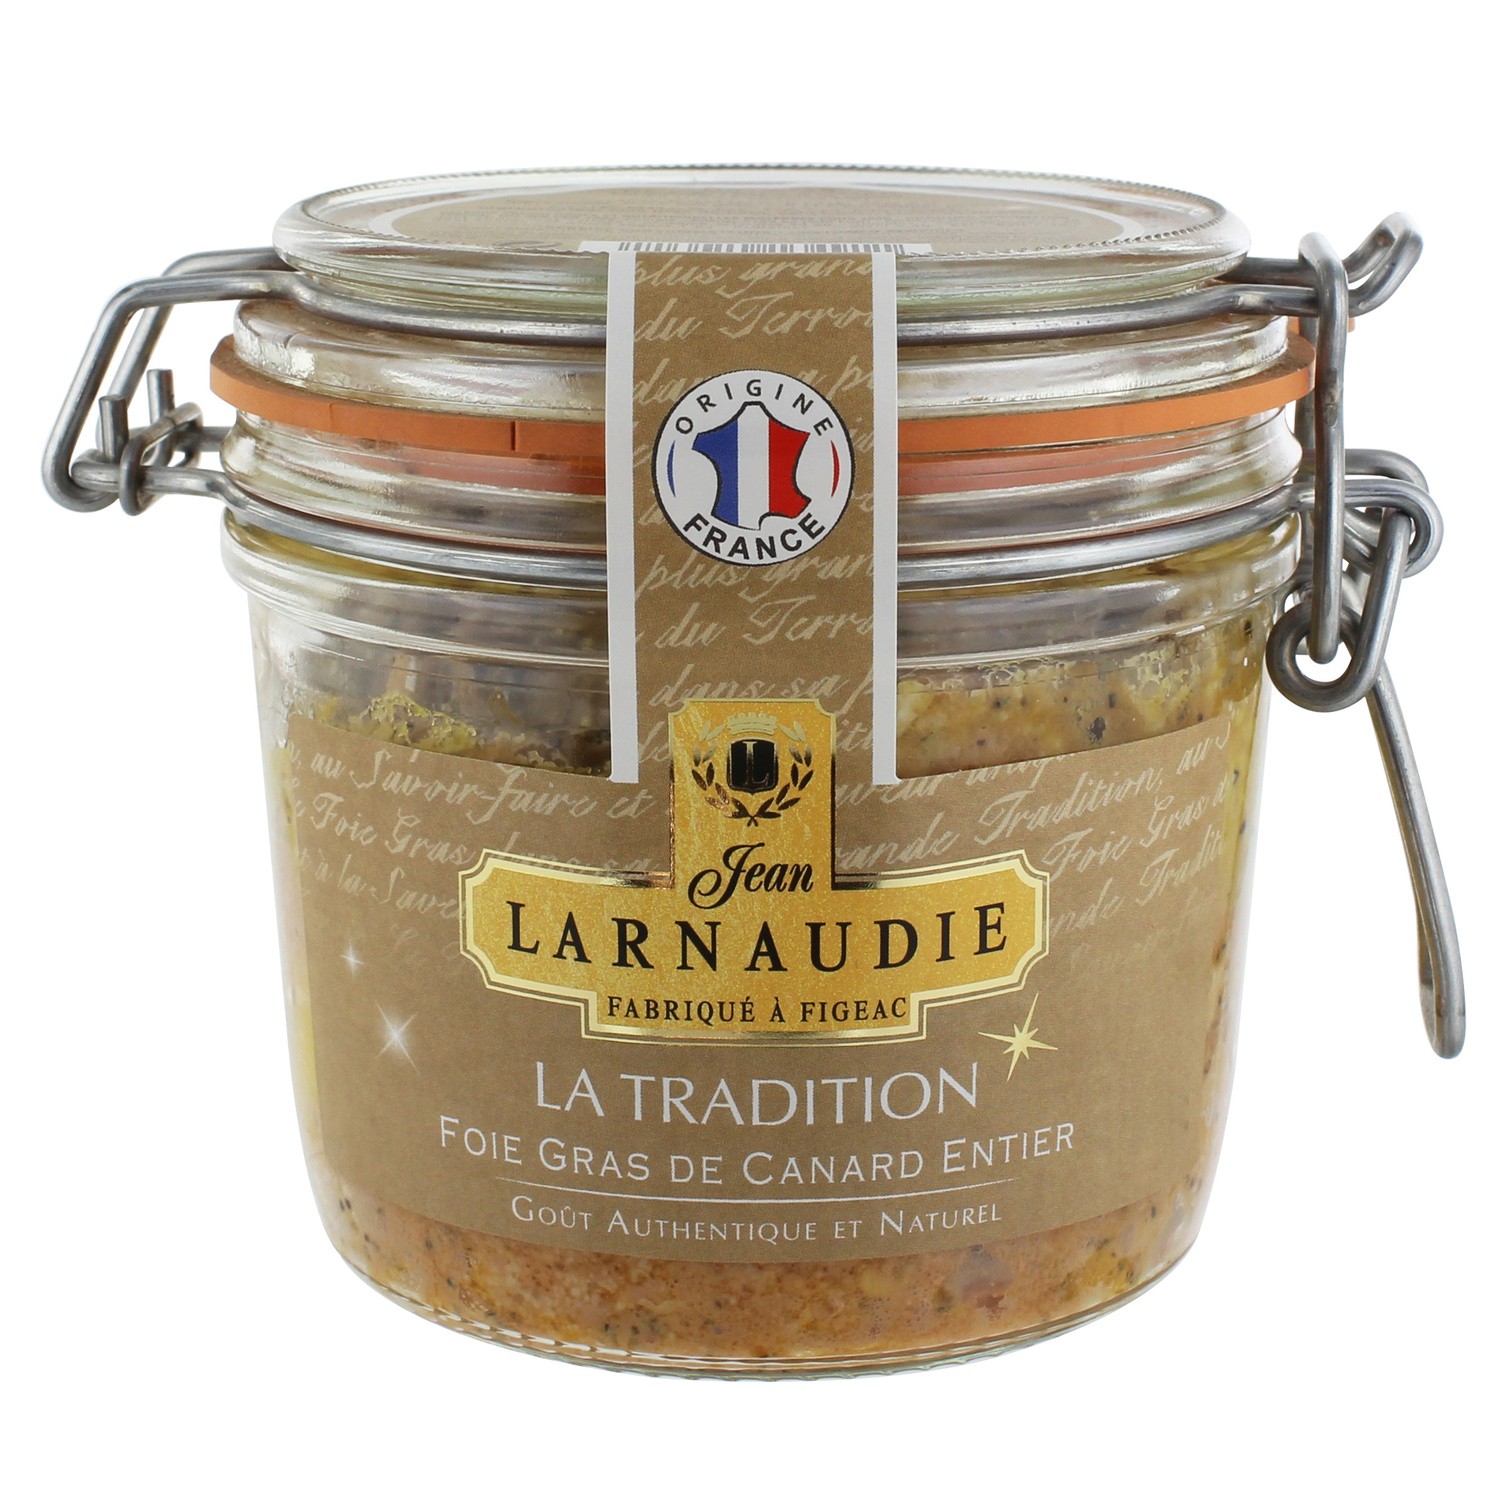 Larnaudie Duck foie gras Tradition 170g